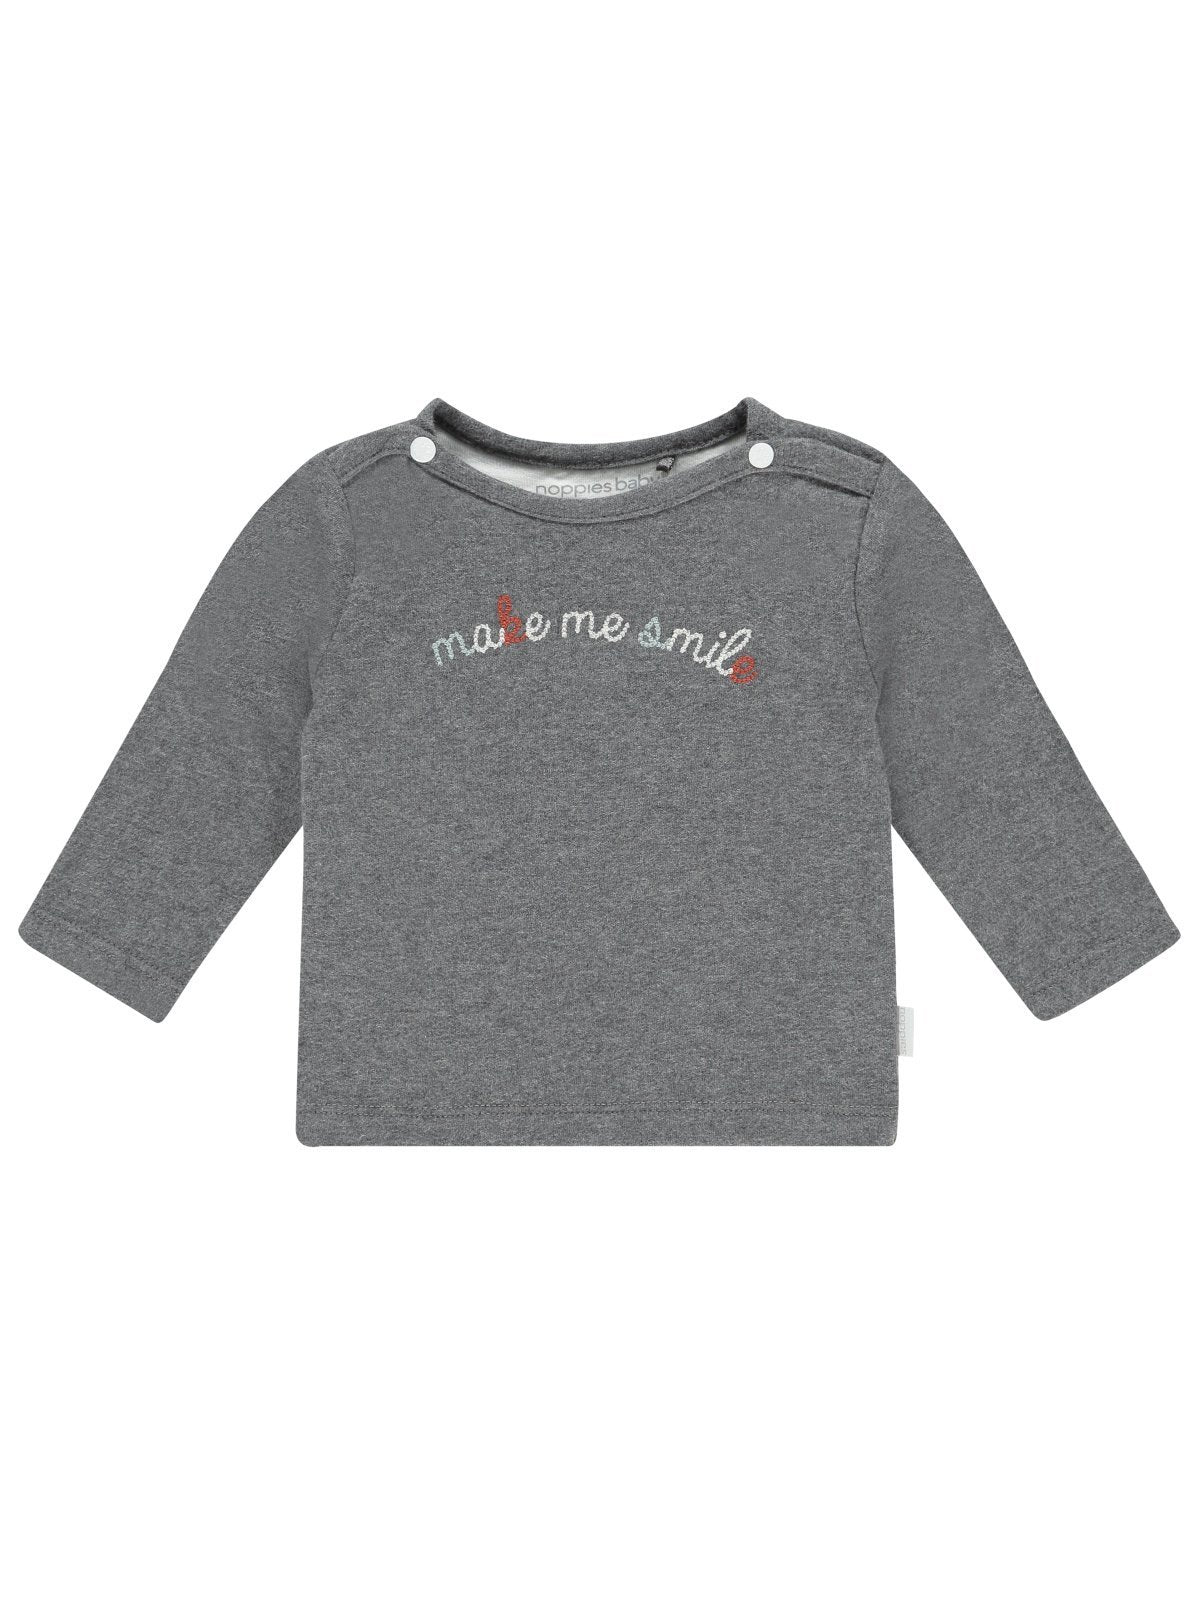 Grey "Make Me Smile" top - Organic Cotton Top / T-shirt Noppies 